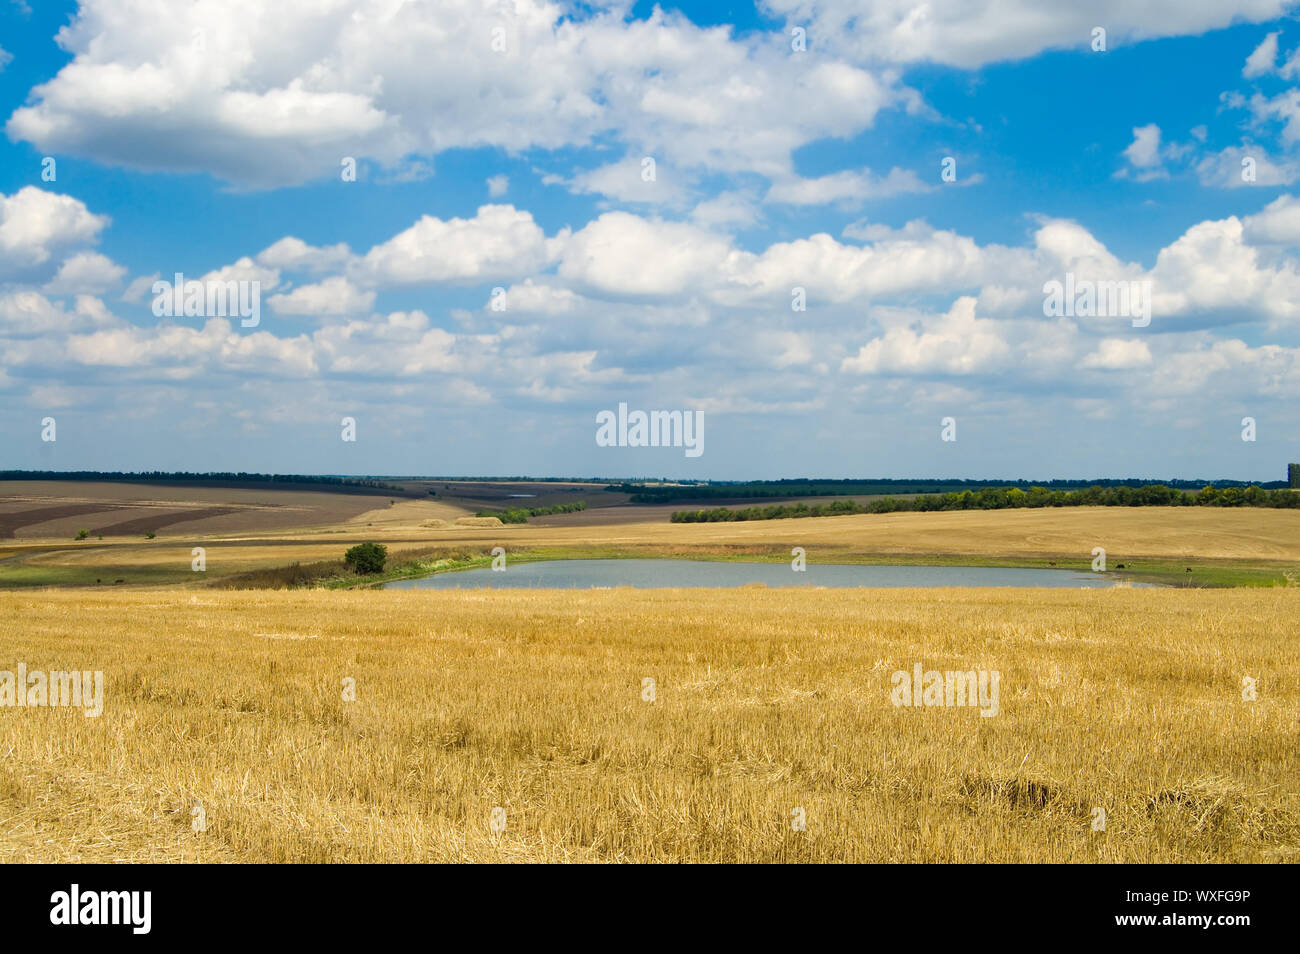 Vista de la localidad rural con un estanque y nubes en el fondo Foto de stock